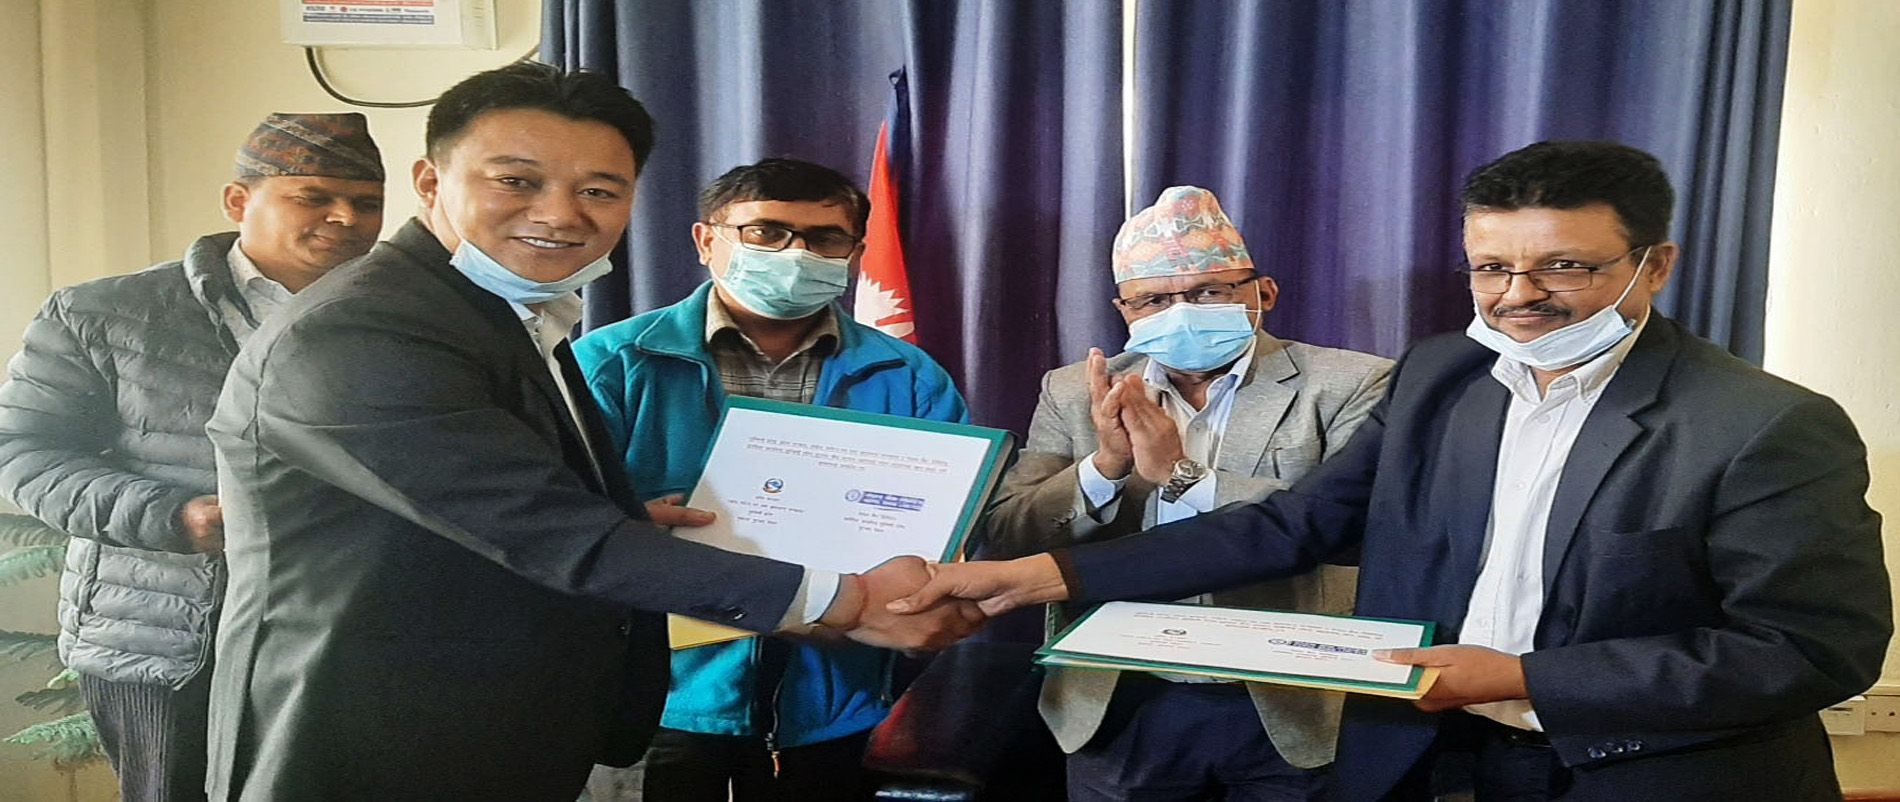 उद्यमीलाई लुम्बिनी प्रदेश सरकारद्वारा शून्य ब्याजदरमा ऋण